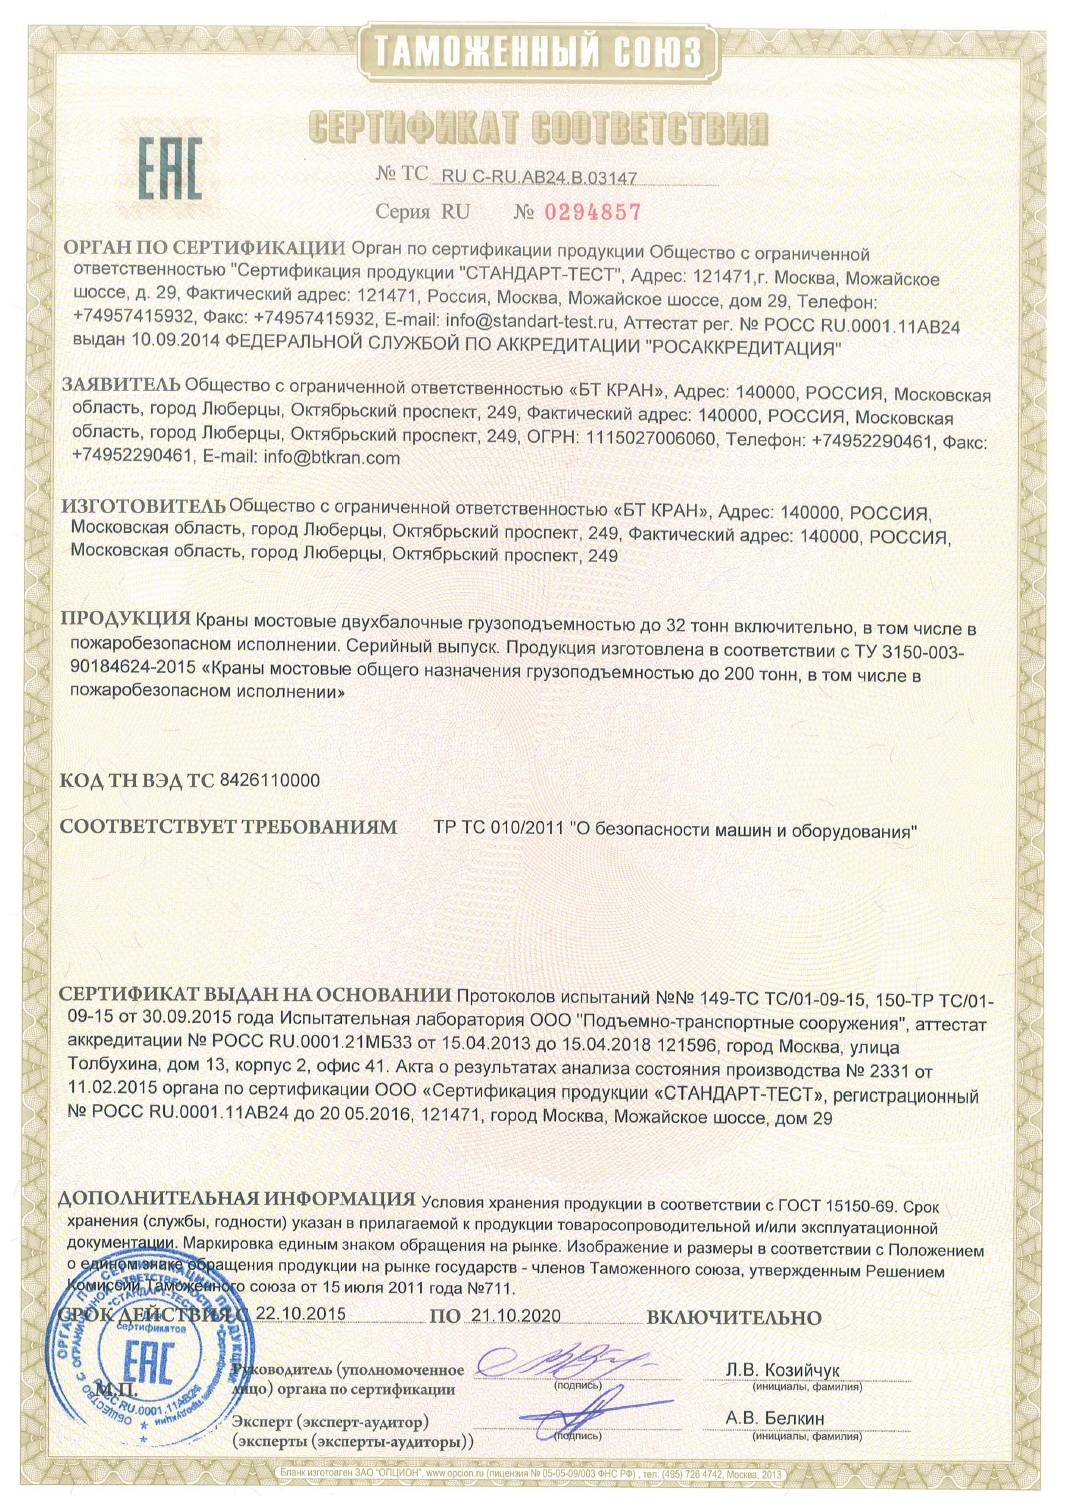 Сертификат на мостовые двухбалочные краны до 21.10.2020г.